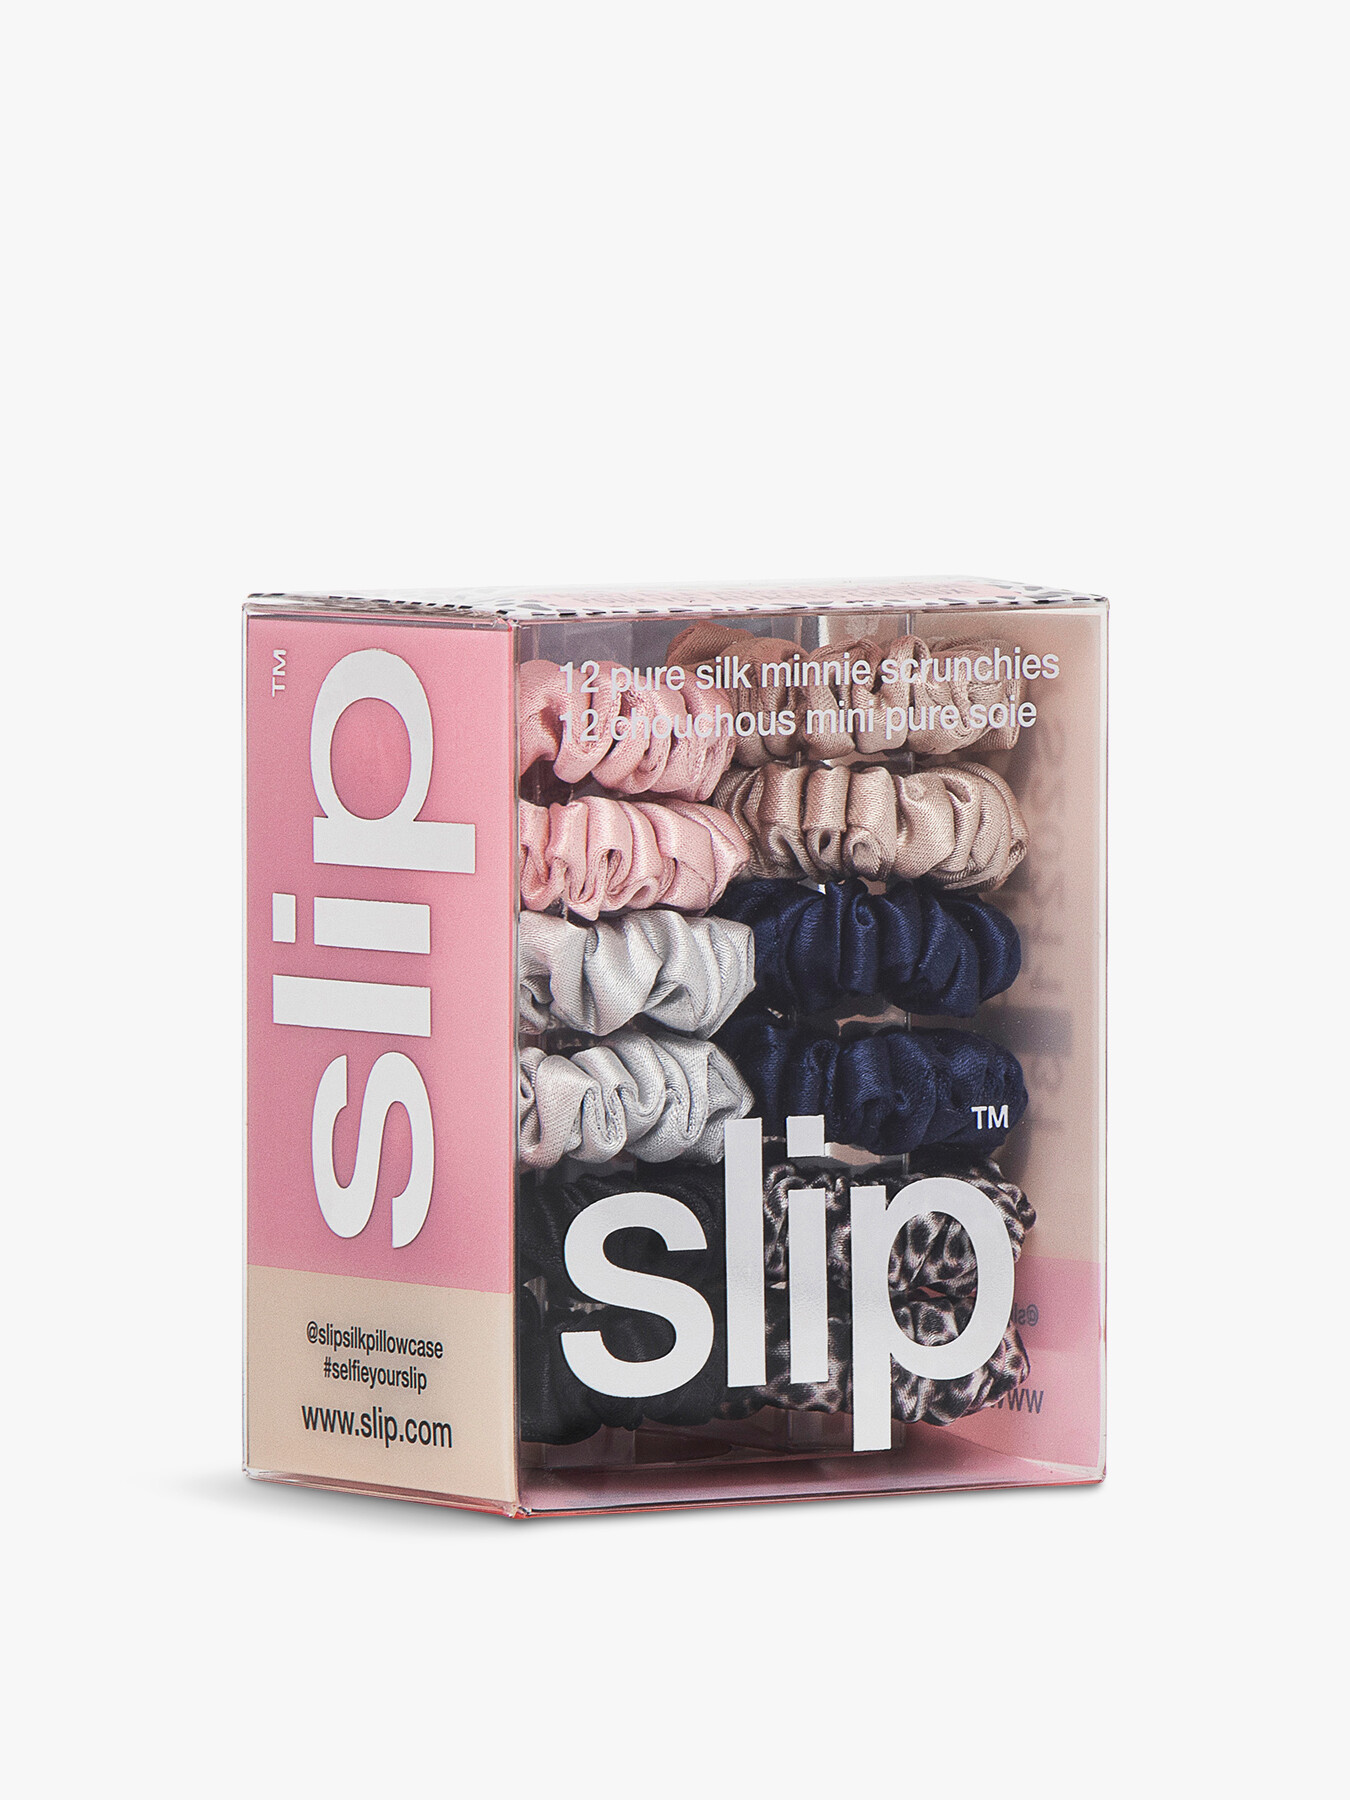 Slip Pure Silk Minnie Scrunchies Set Of 12 Classic